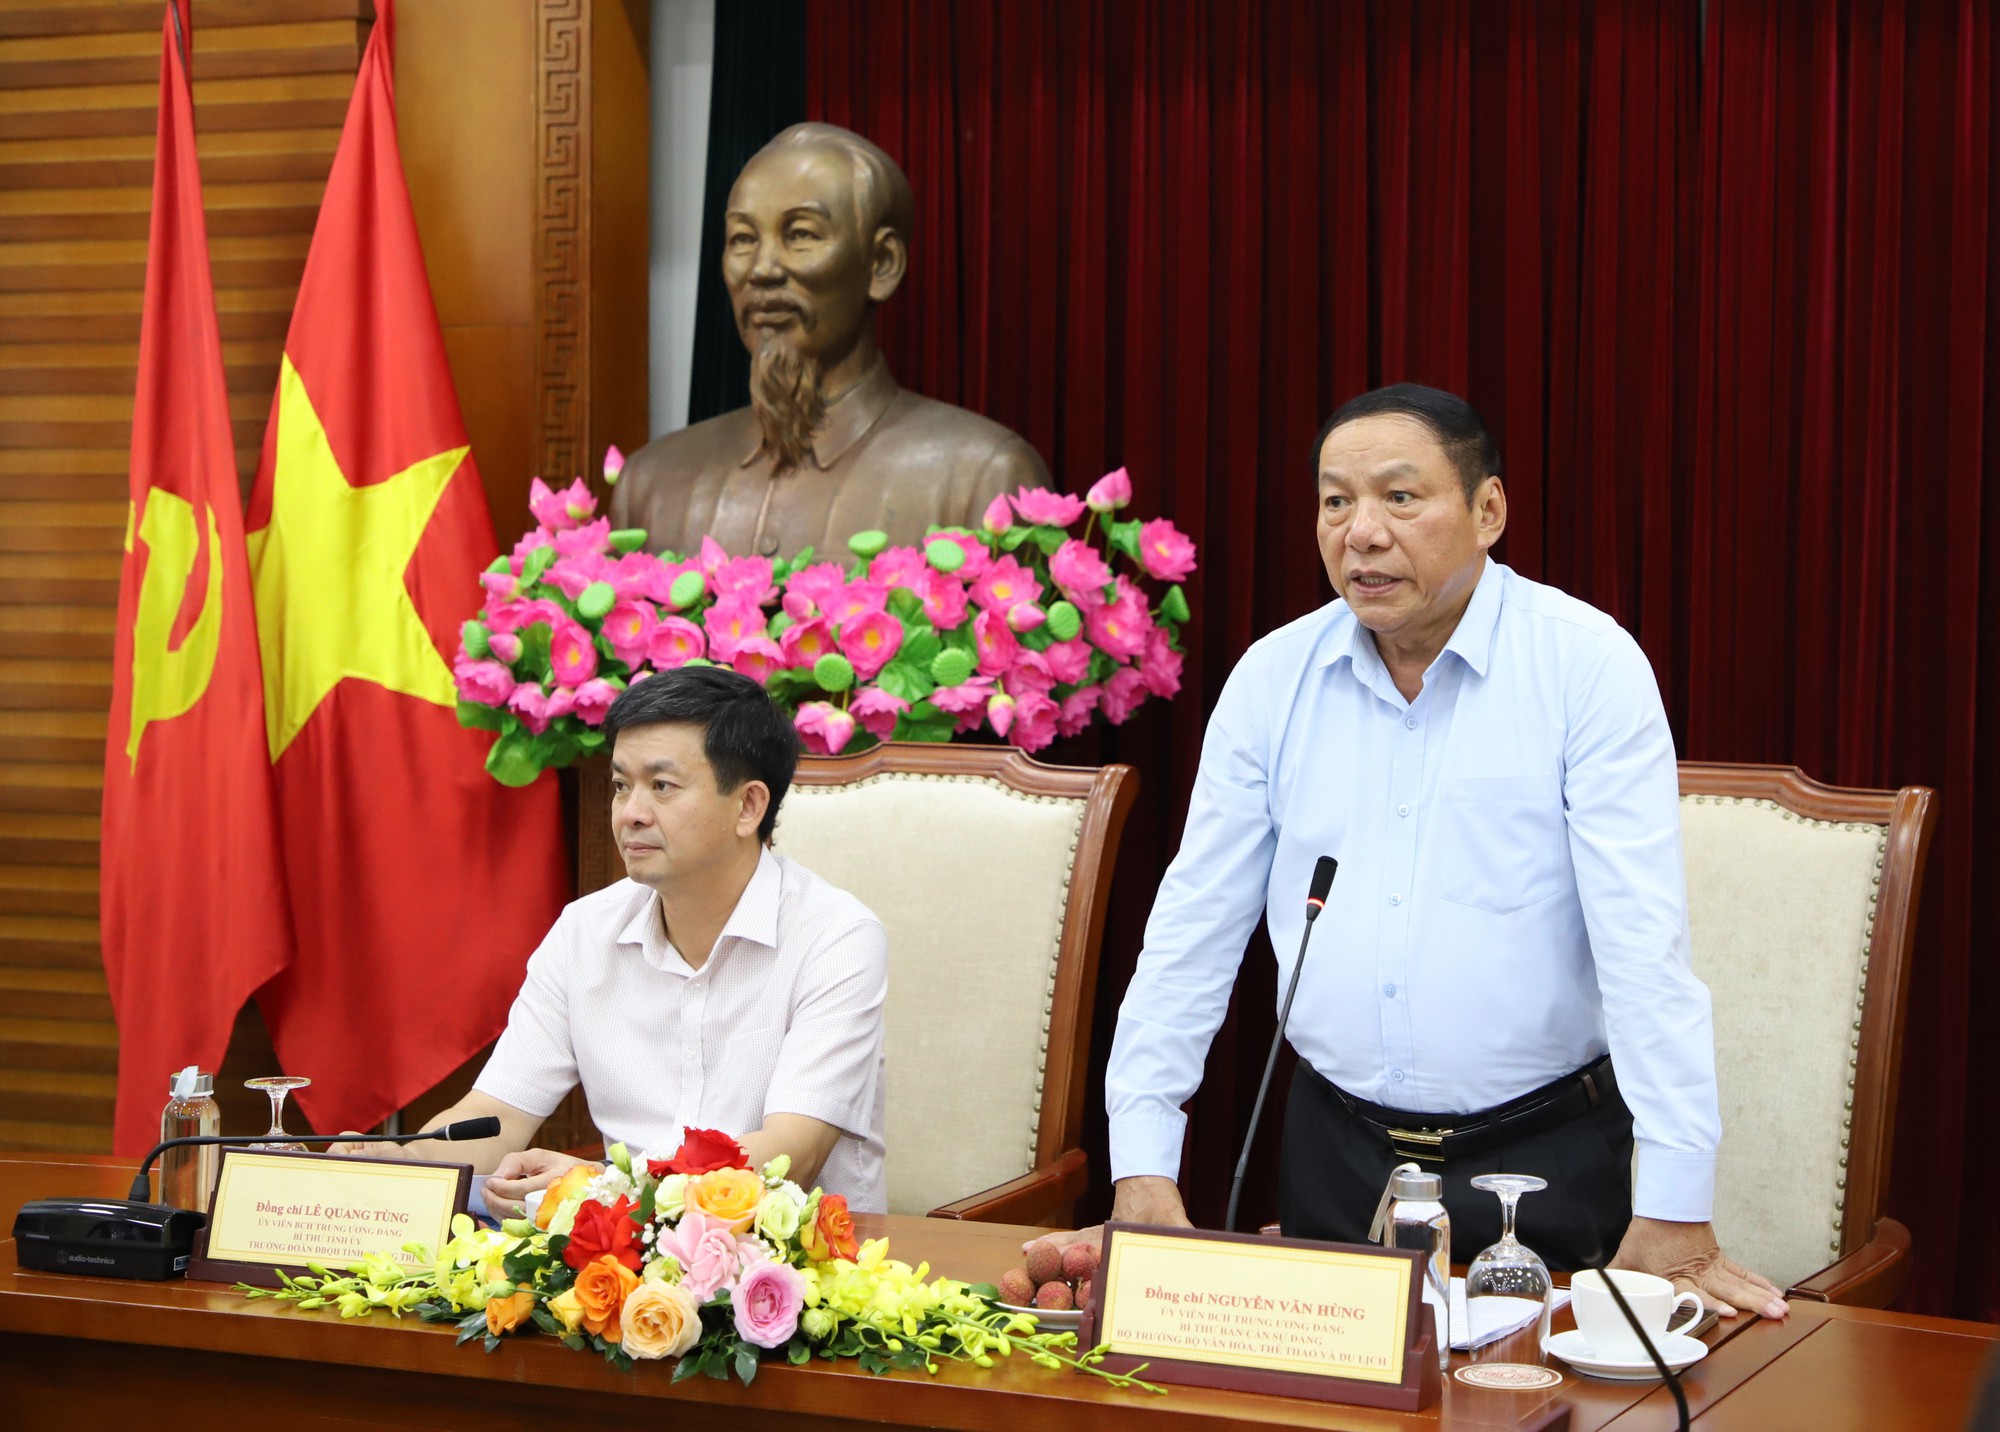 Bộ trưởng Nguyễn Văn Hùng: Nhân lên sức mạnh từ văn hoá và bằng văn hoá để phát triển tỉnh Quảng Trị - Ảnh 4.